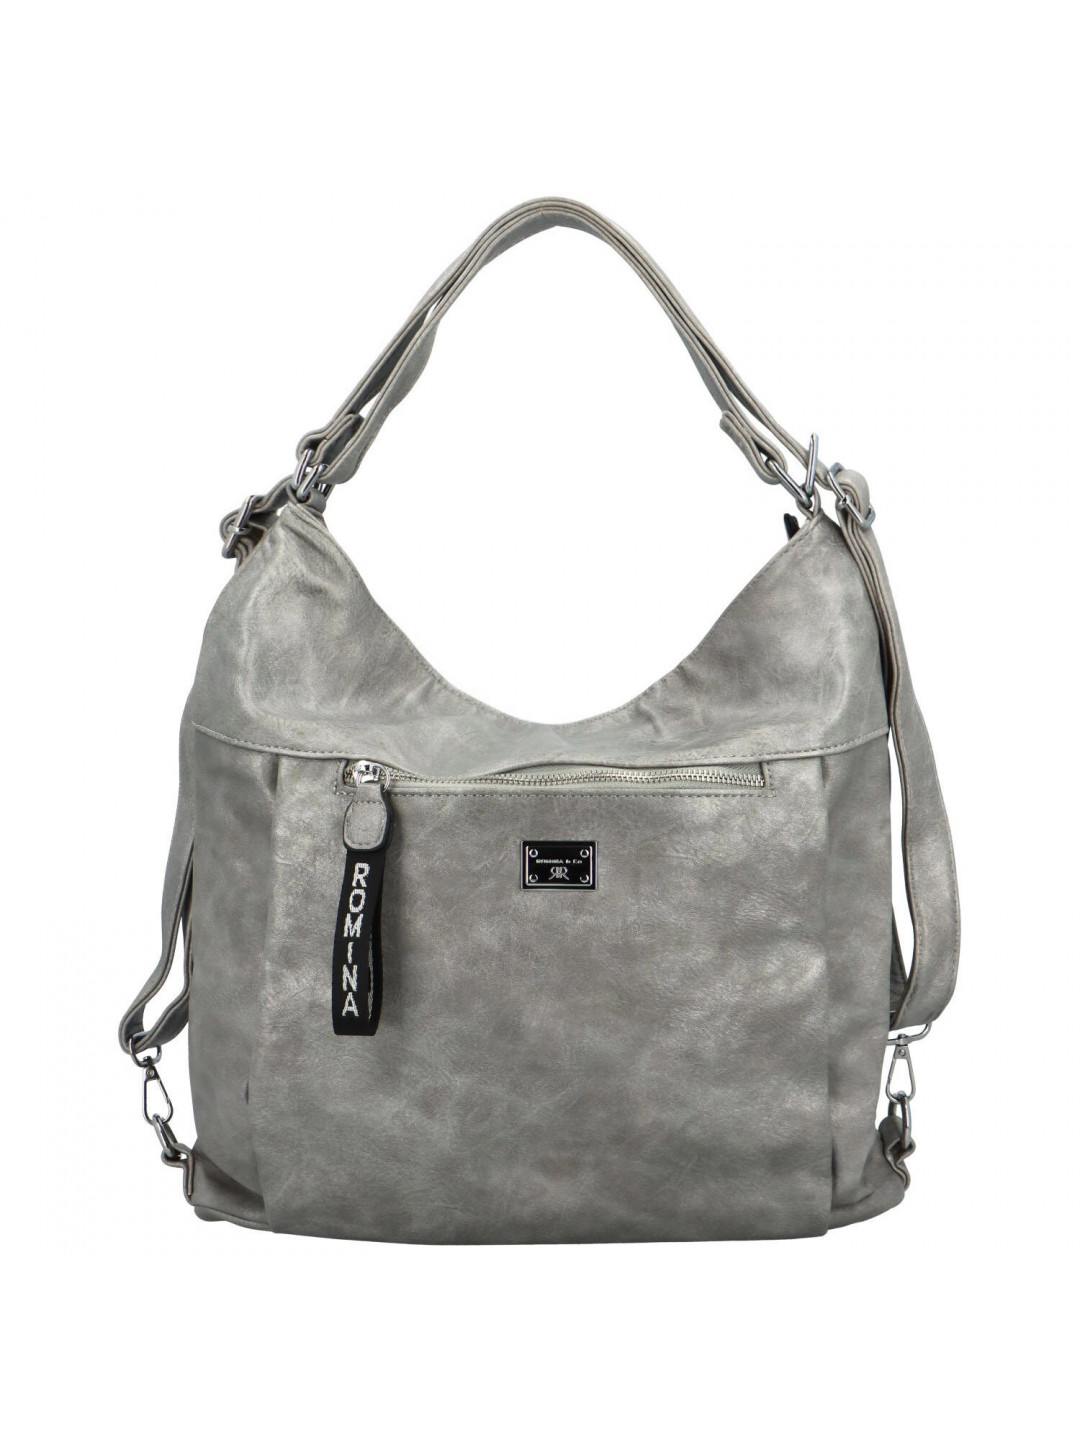 Stylový dámský koženkový kabelko-batoh Stafania stříbrný